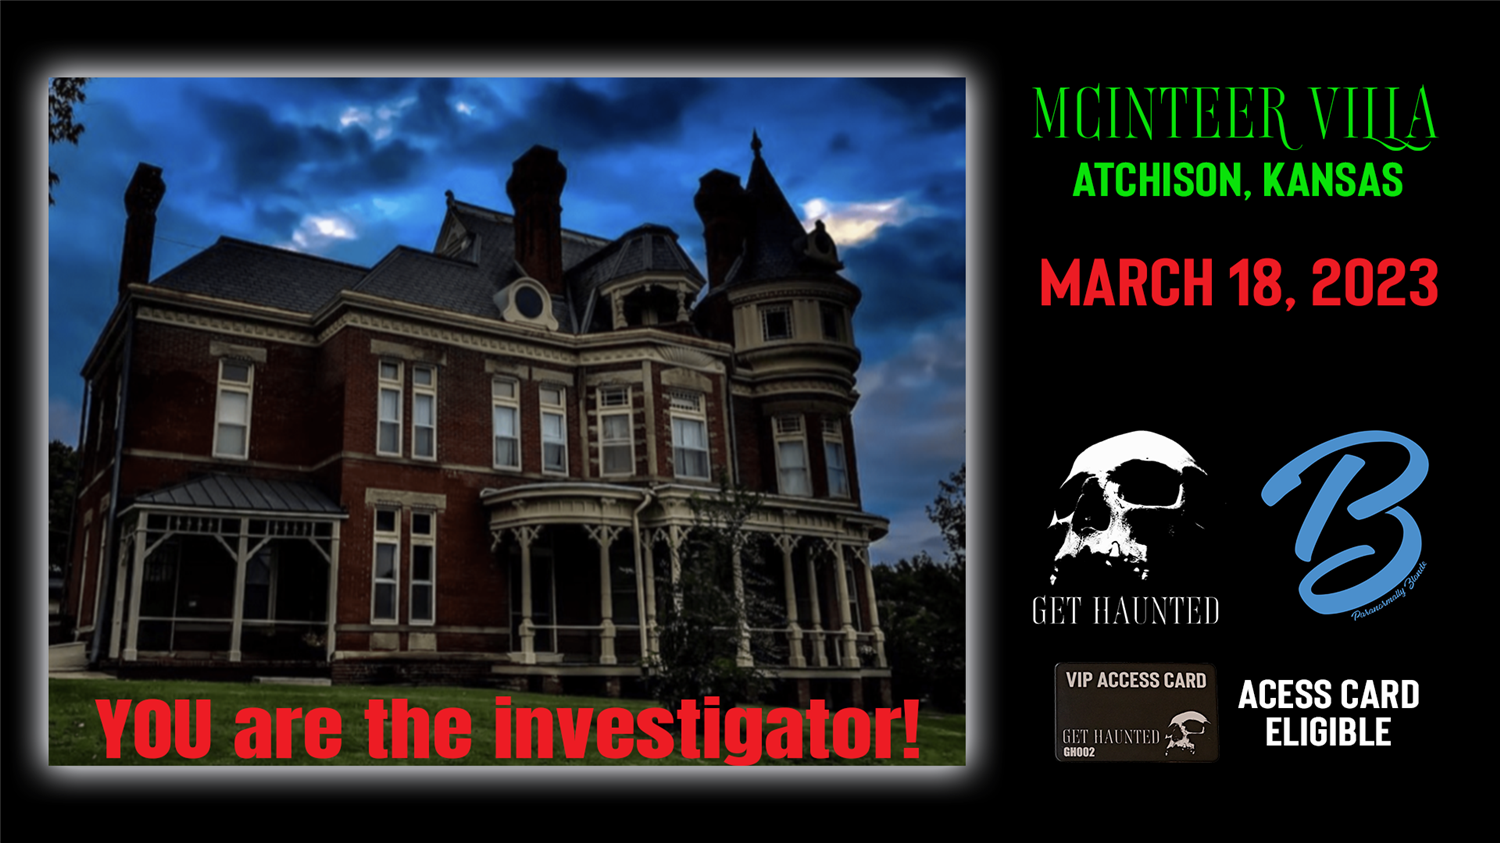 McInteer Villa - Paranormal Experience  on mar. 18, 19:00@1889 McInteer Villa - Compra entradas y obtén información enThriller Events thriller.events